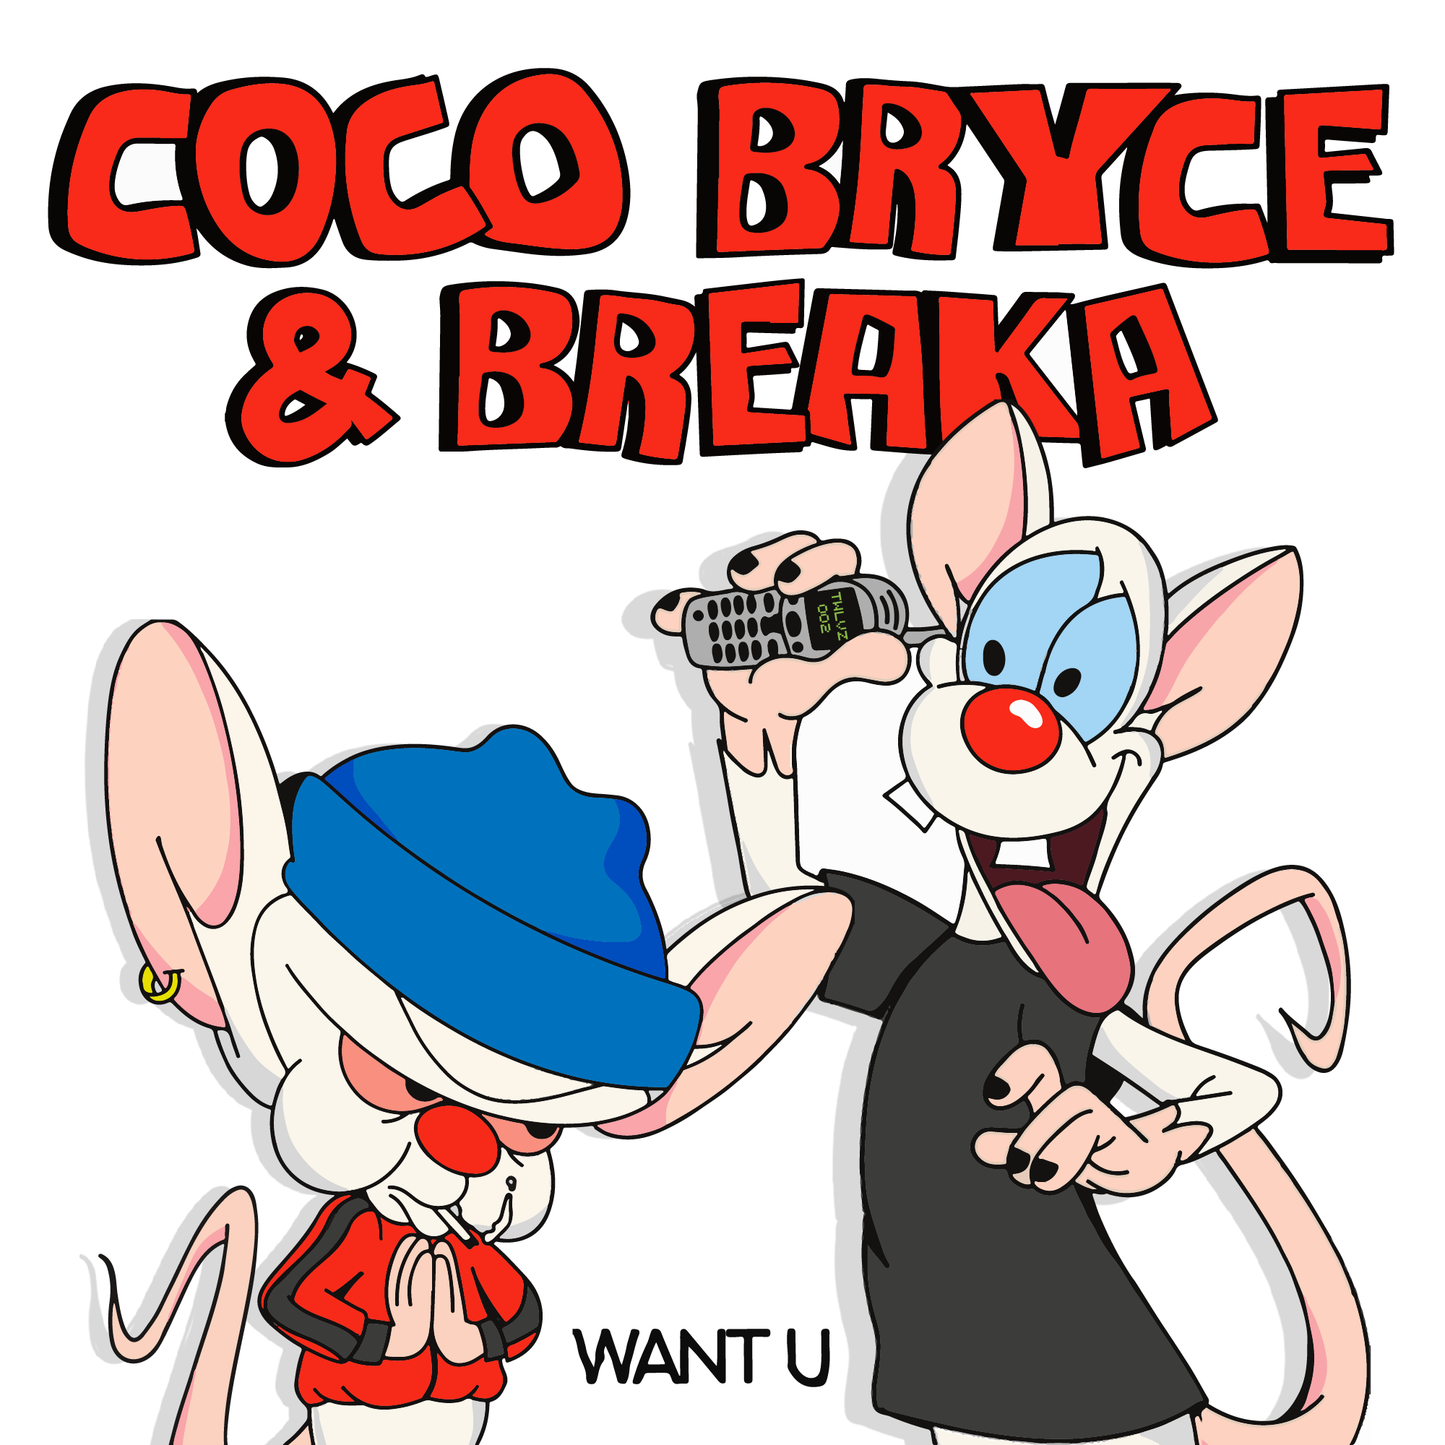 TWLVZ002 - Coco Bryce - Want U [+ Breaka Remix]